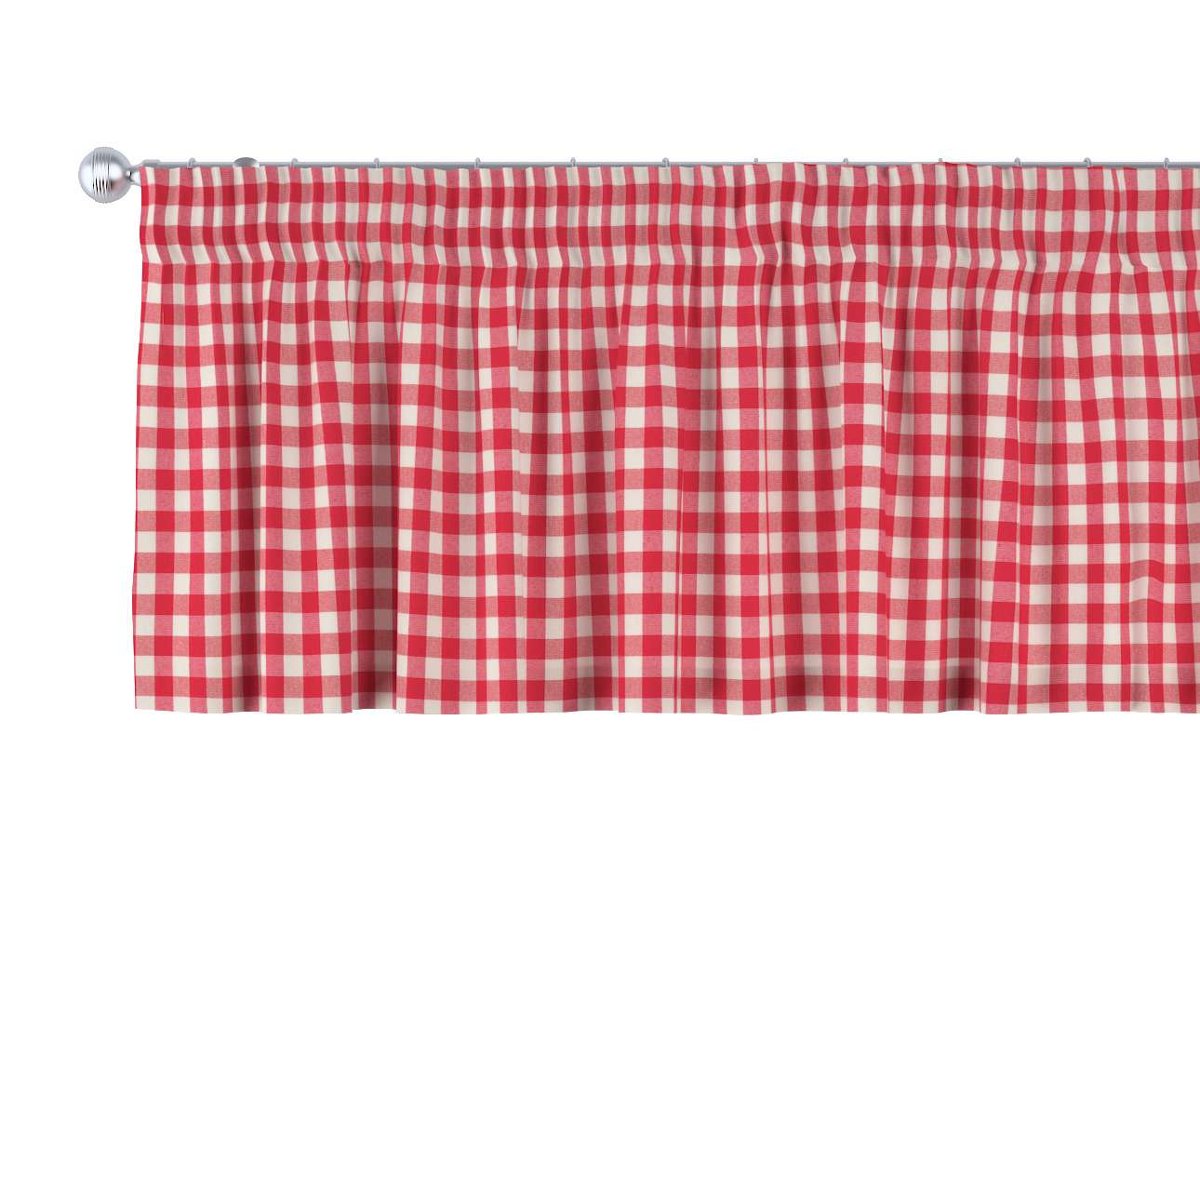 Dekoria Lambrekin na taśmie marszczącej czerwono biała kratka 1,5x1,5cm) 130 × 40 cm Quadro 393-136-16